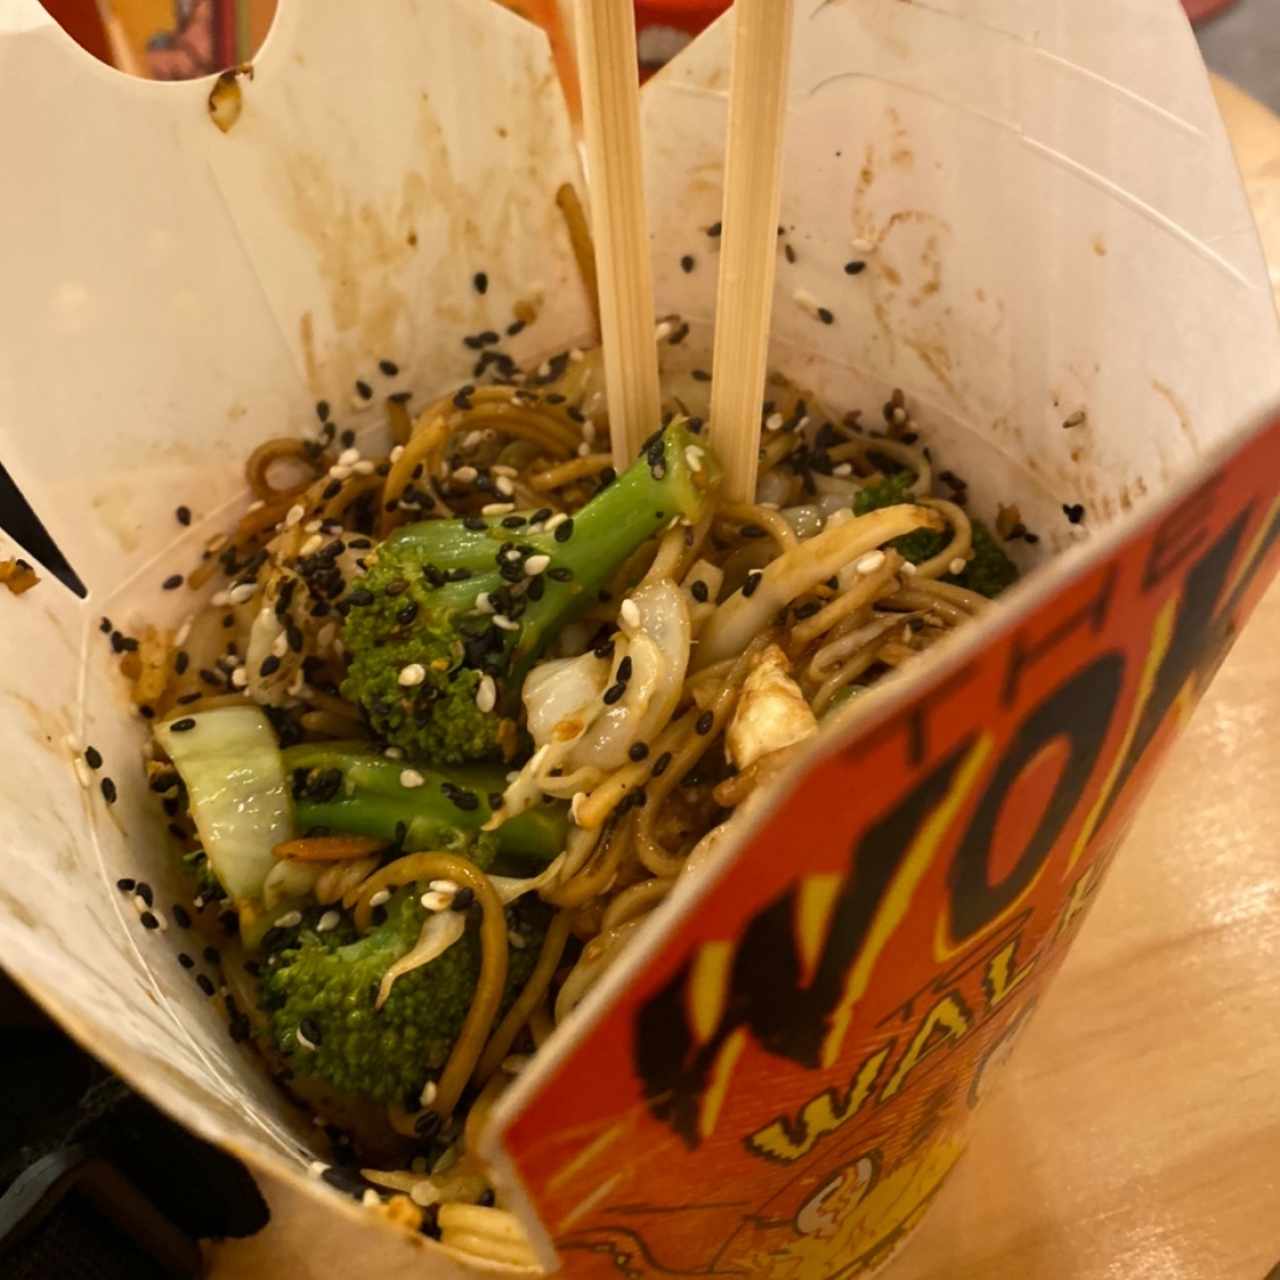 Arma tu wok - Base de Noodles de arroz, brocoli, salda tokio, vegetales y semillas de sesamo